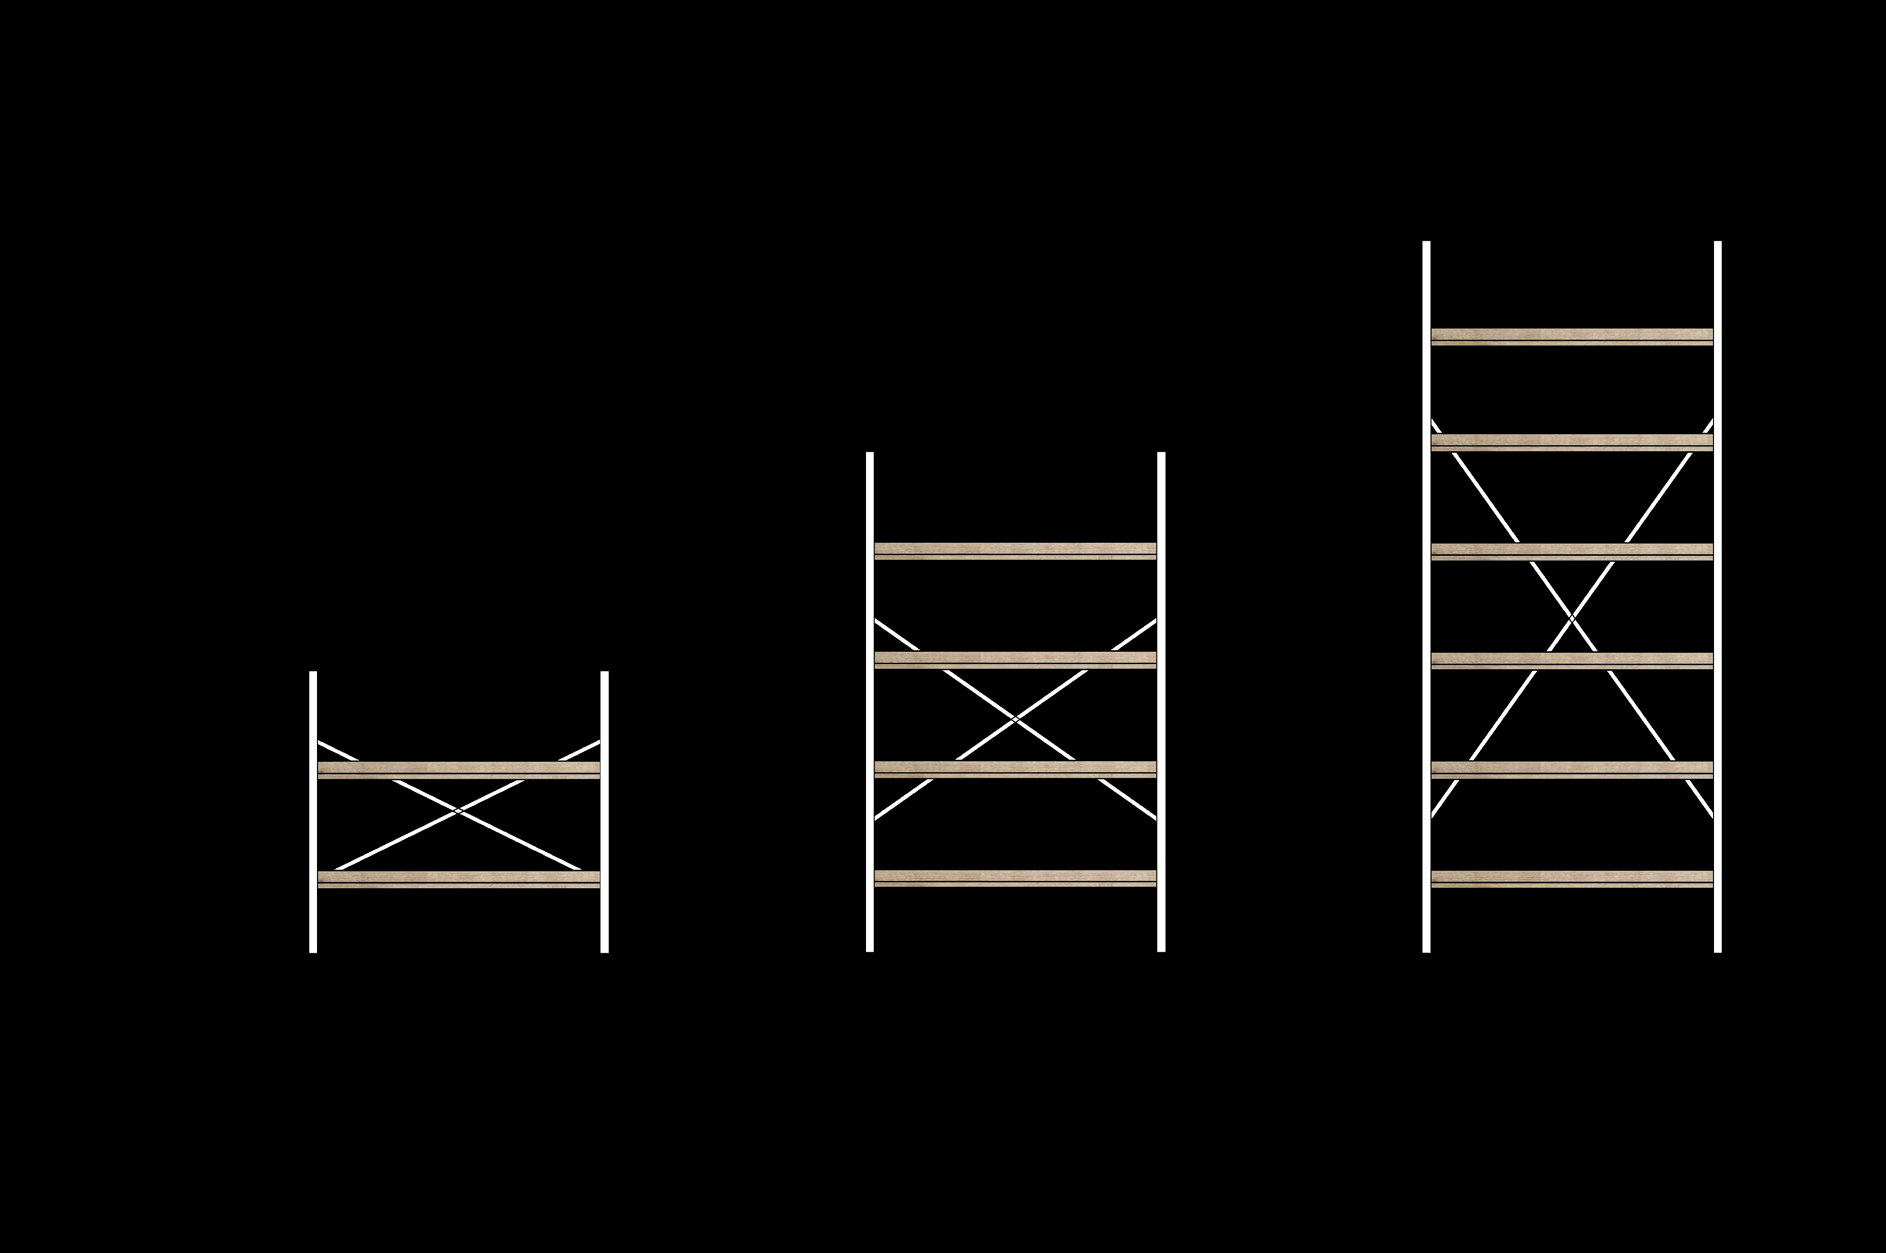 DIMENISONI RIPIANI - FOLDING Étagères dimensions - Folding / Shelves dimensions - Folding / Regale dimensionen - Folding H. 6 cm Sp. 1,8 cm P.